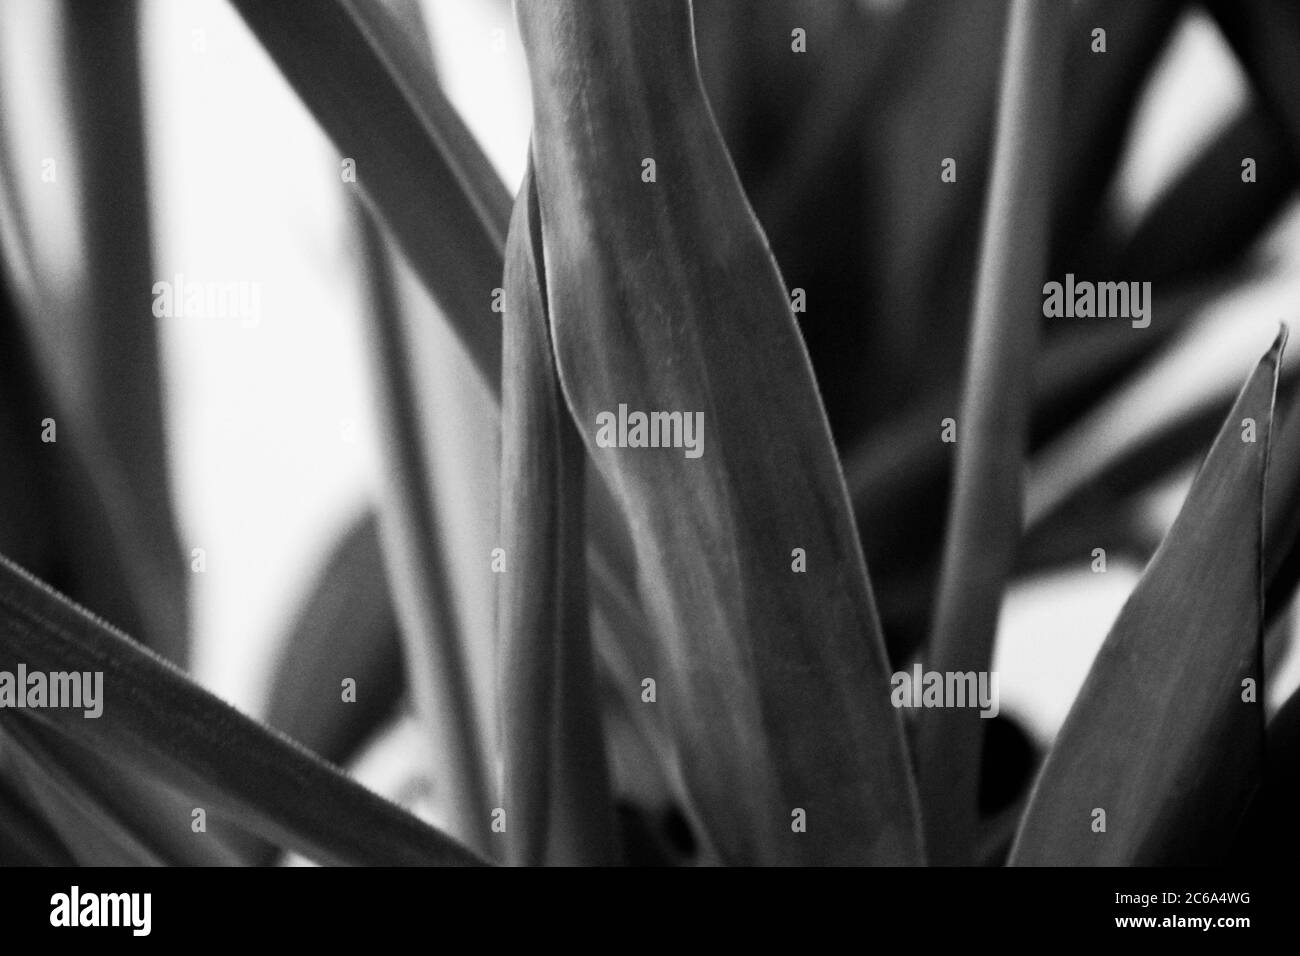 Es hat Zierpflanzen wie Aloe Vera und Blattpflanzen vor dem schwarz-weißen Bild. Stockfoto